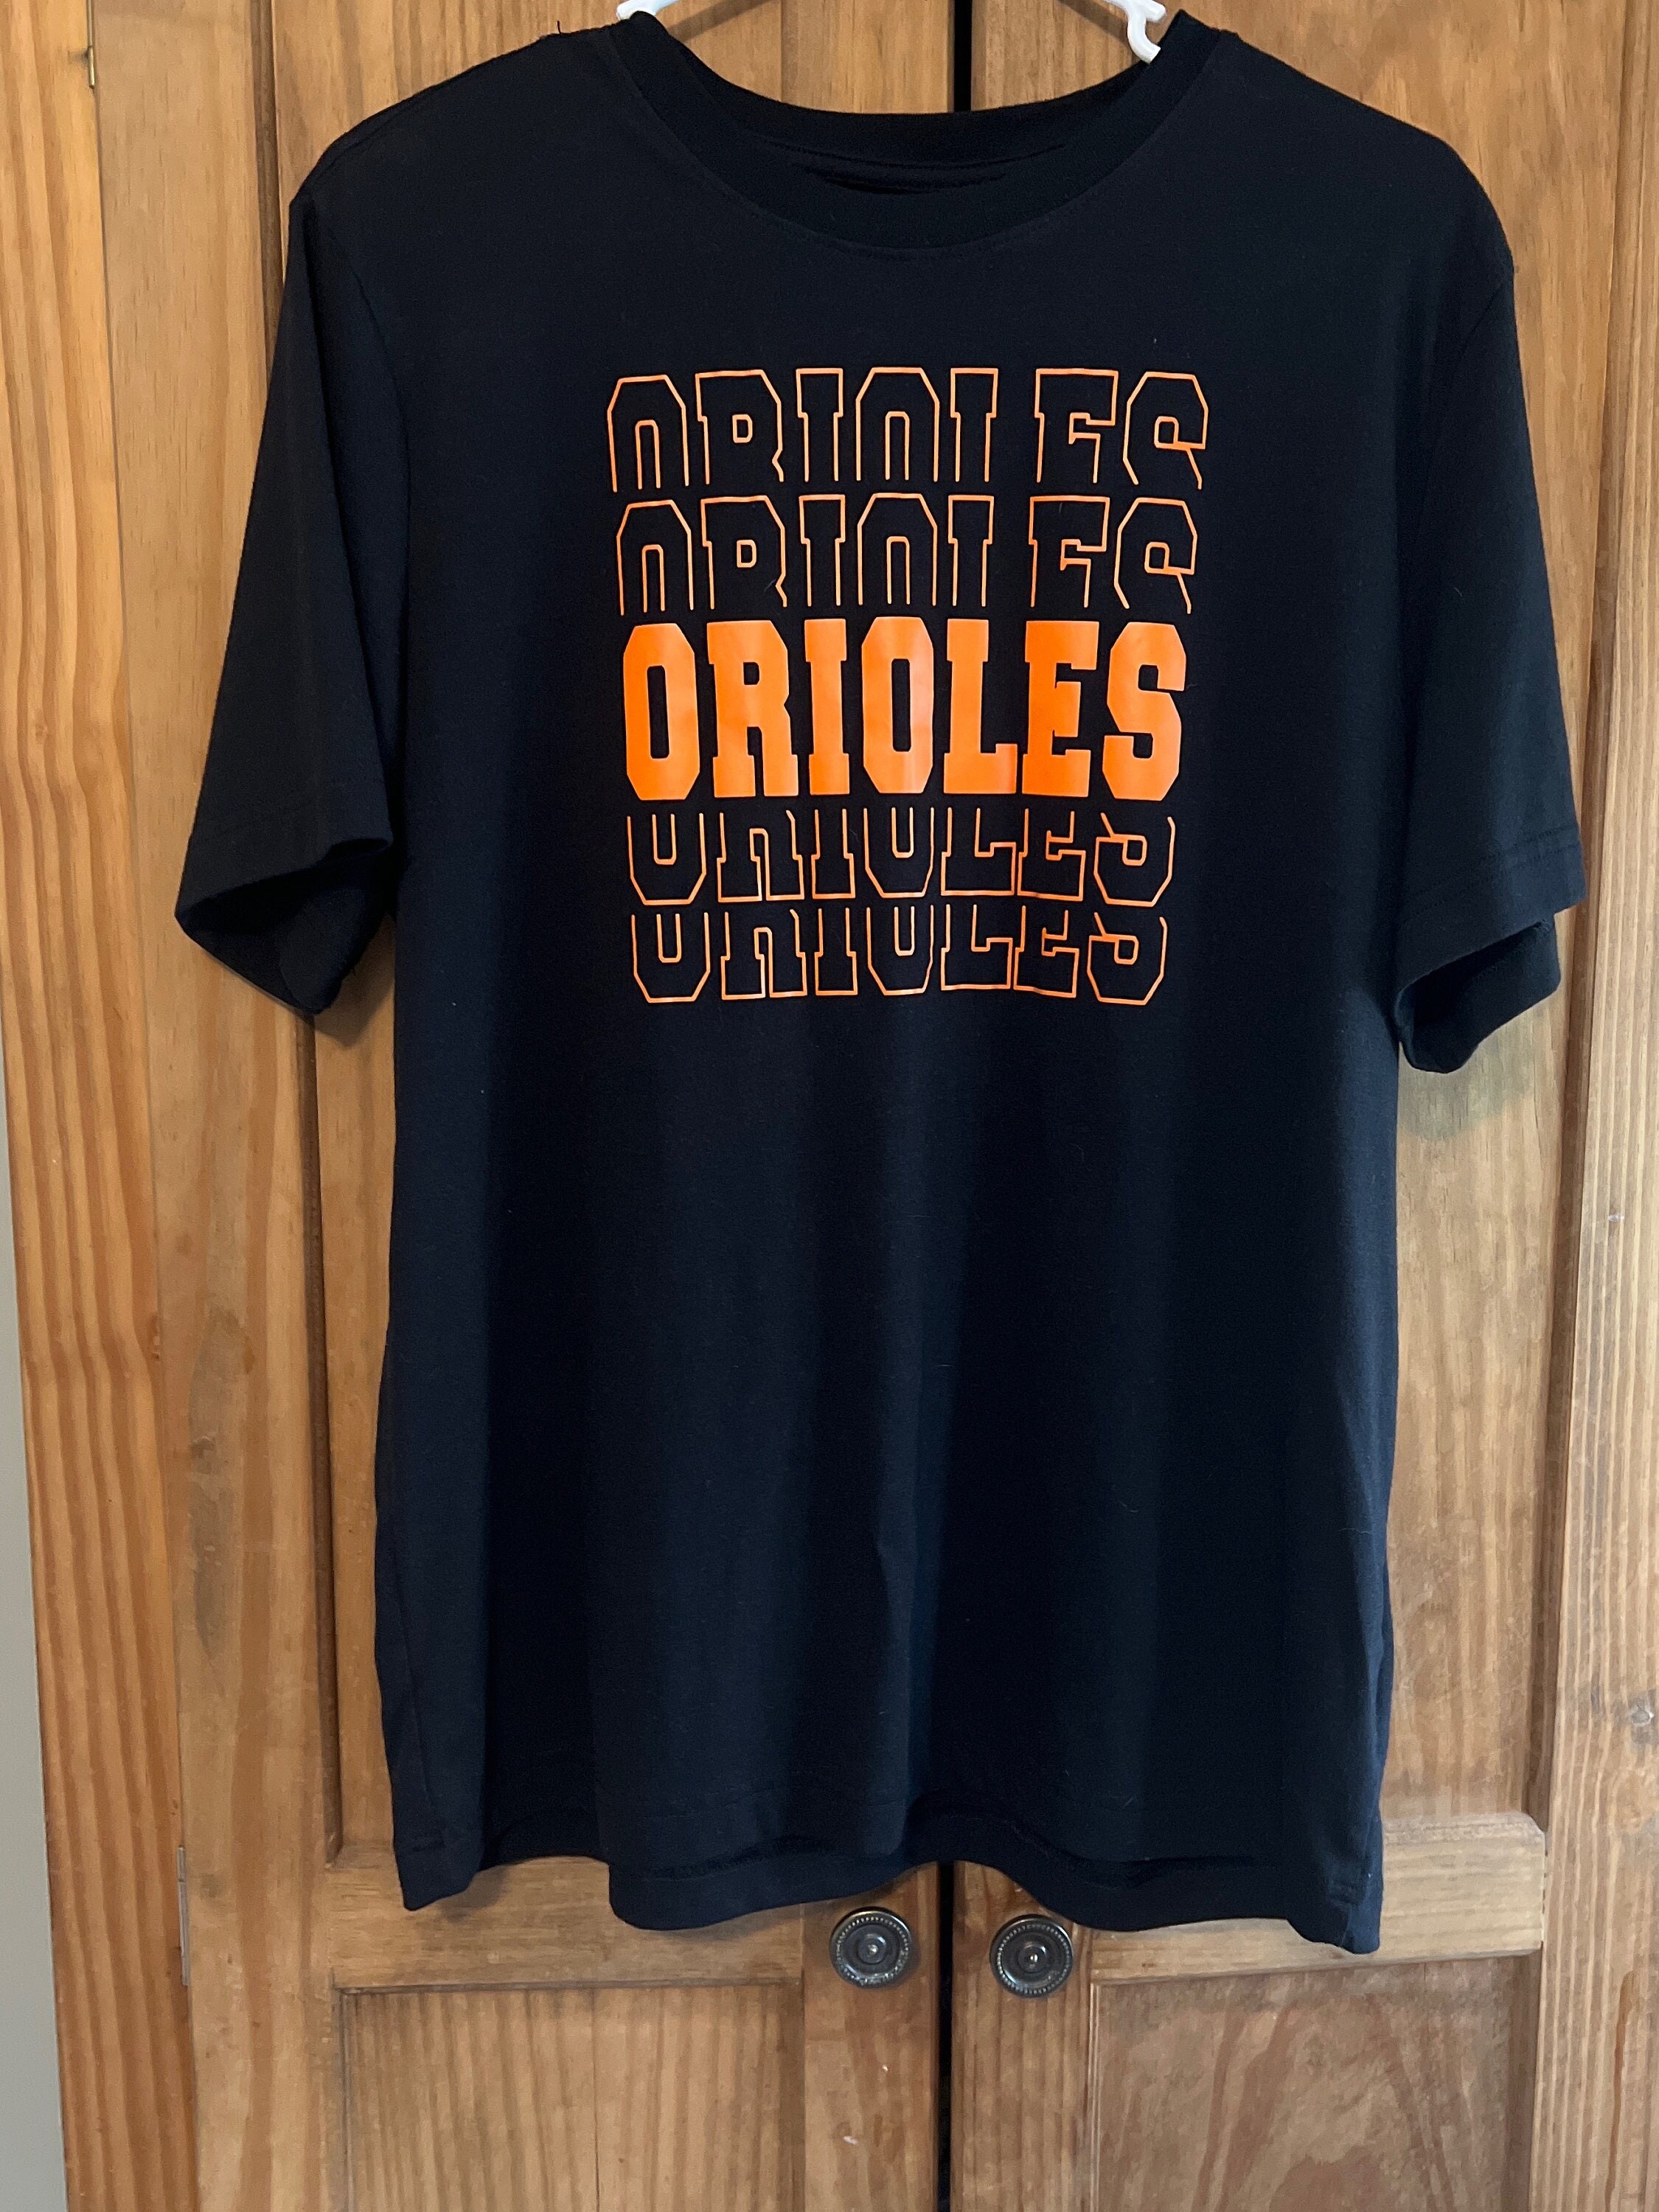 Orioles hot dog race Baltimore Orioles Shirt Unisex Cotton Men